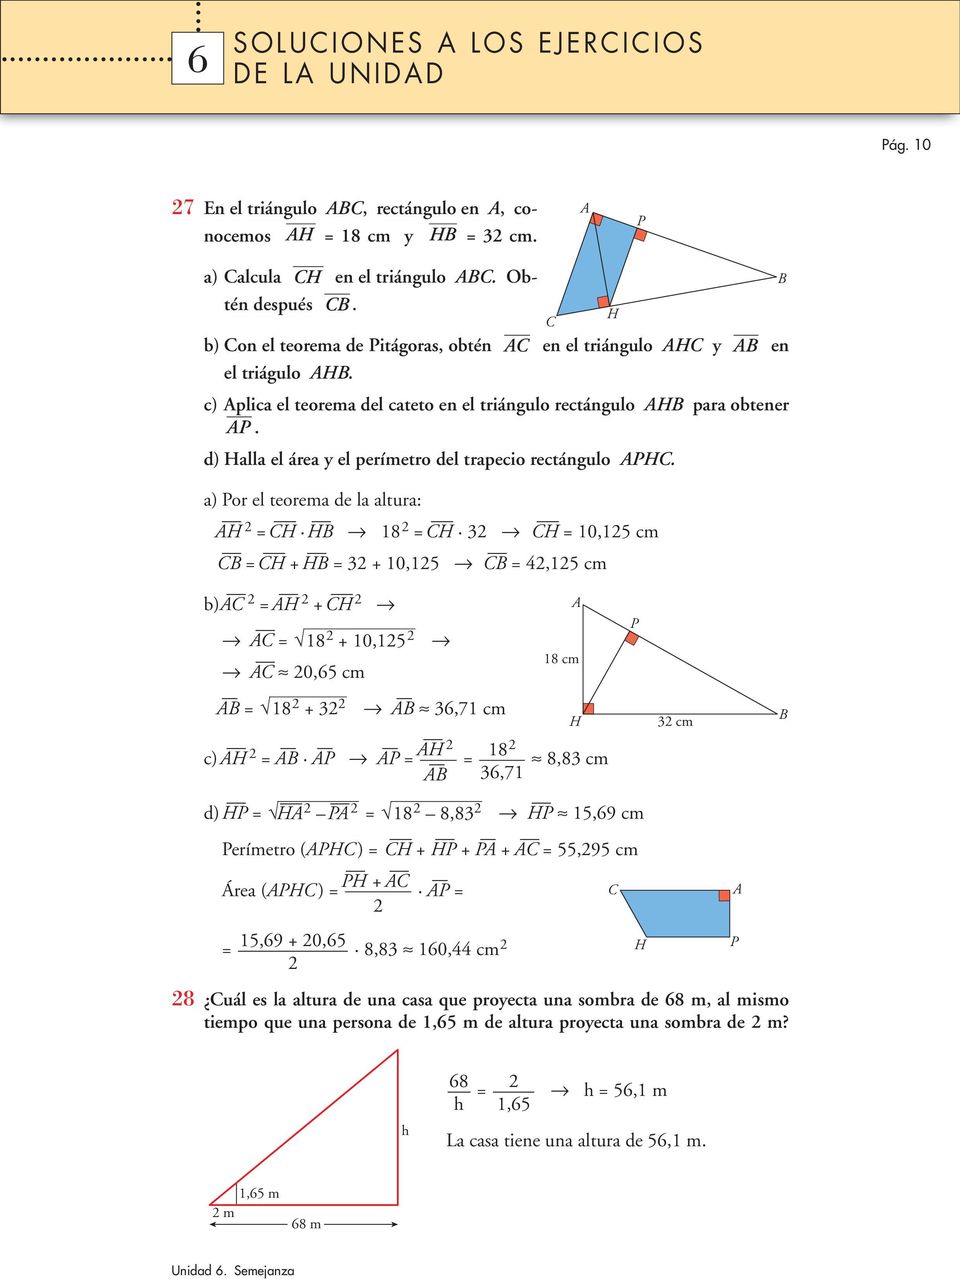 d) Halla el área y el perímetro del trapecio rectángulo H.